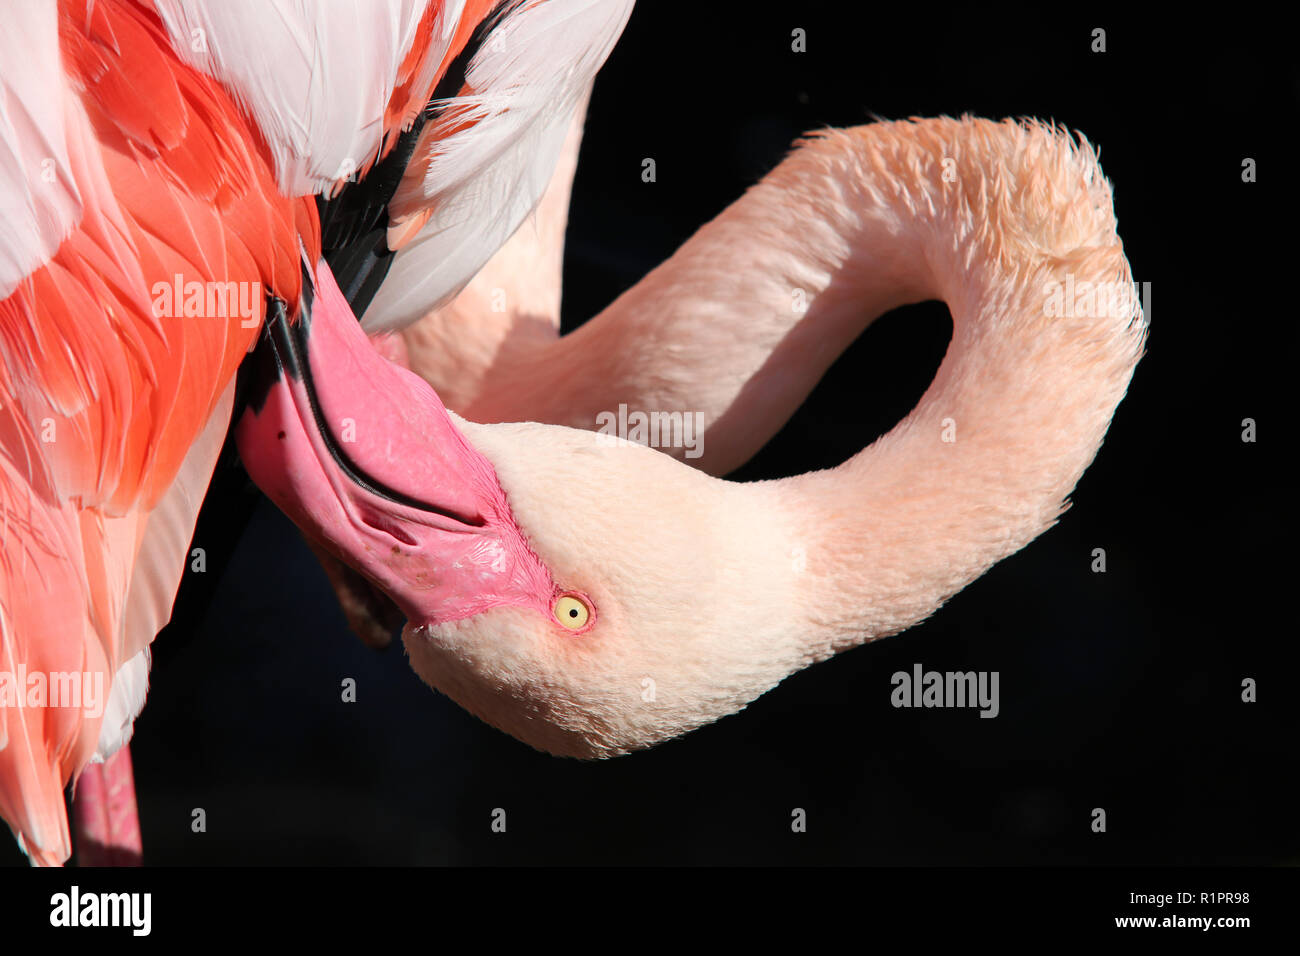 Grattugia flamingo - close-up della testa di grattugia flamingo Foto Stock